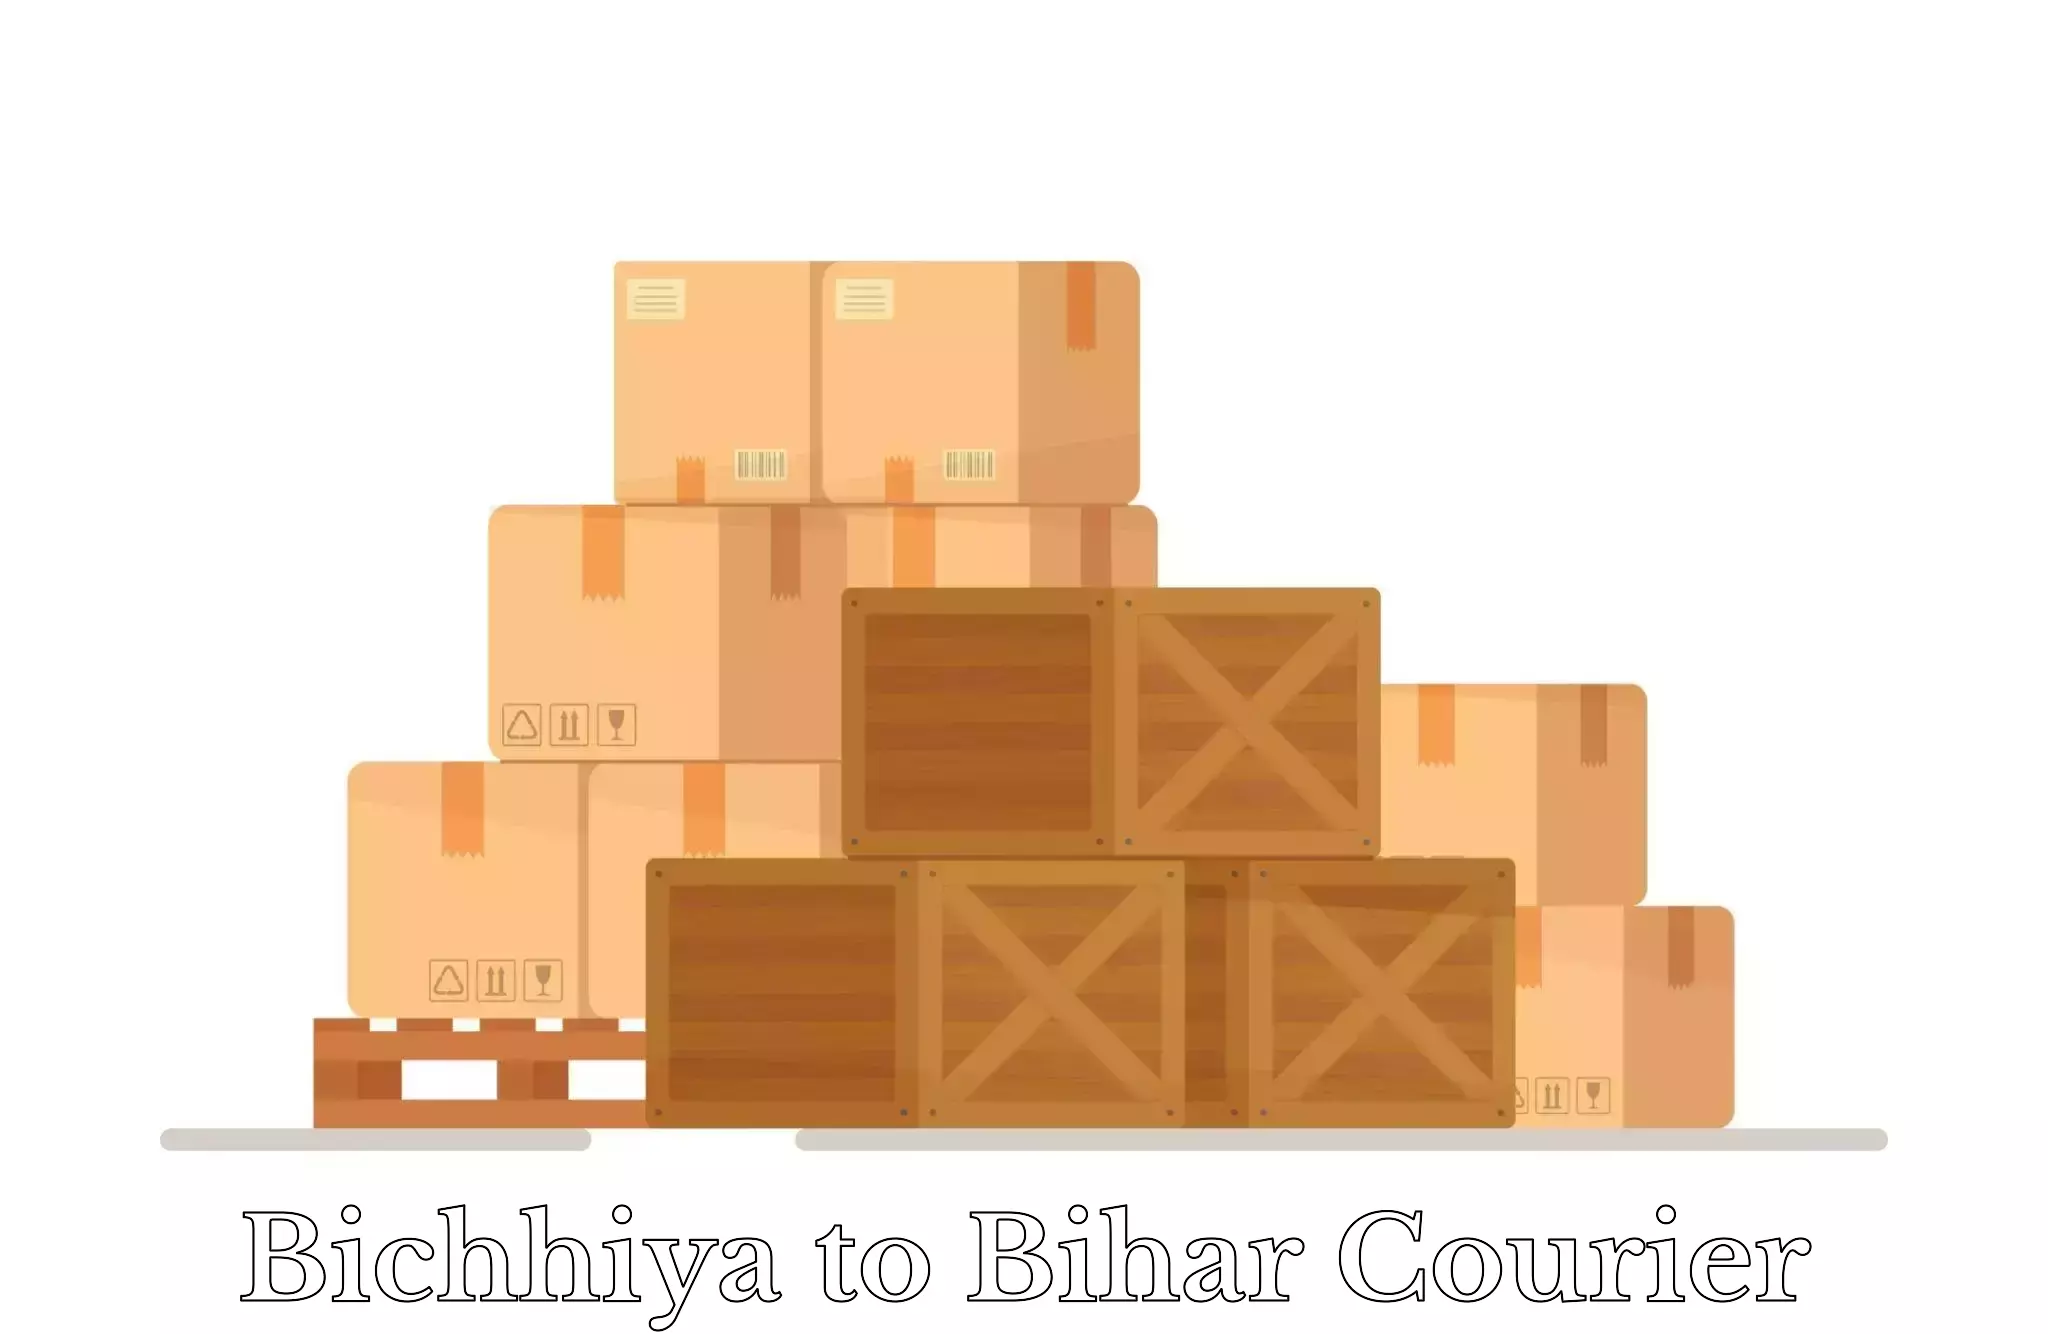 Luggage transport consulting Bichhiya to Malyabag